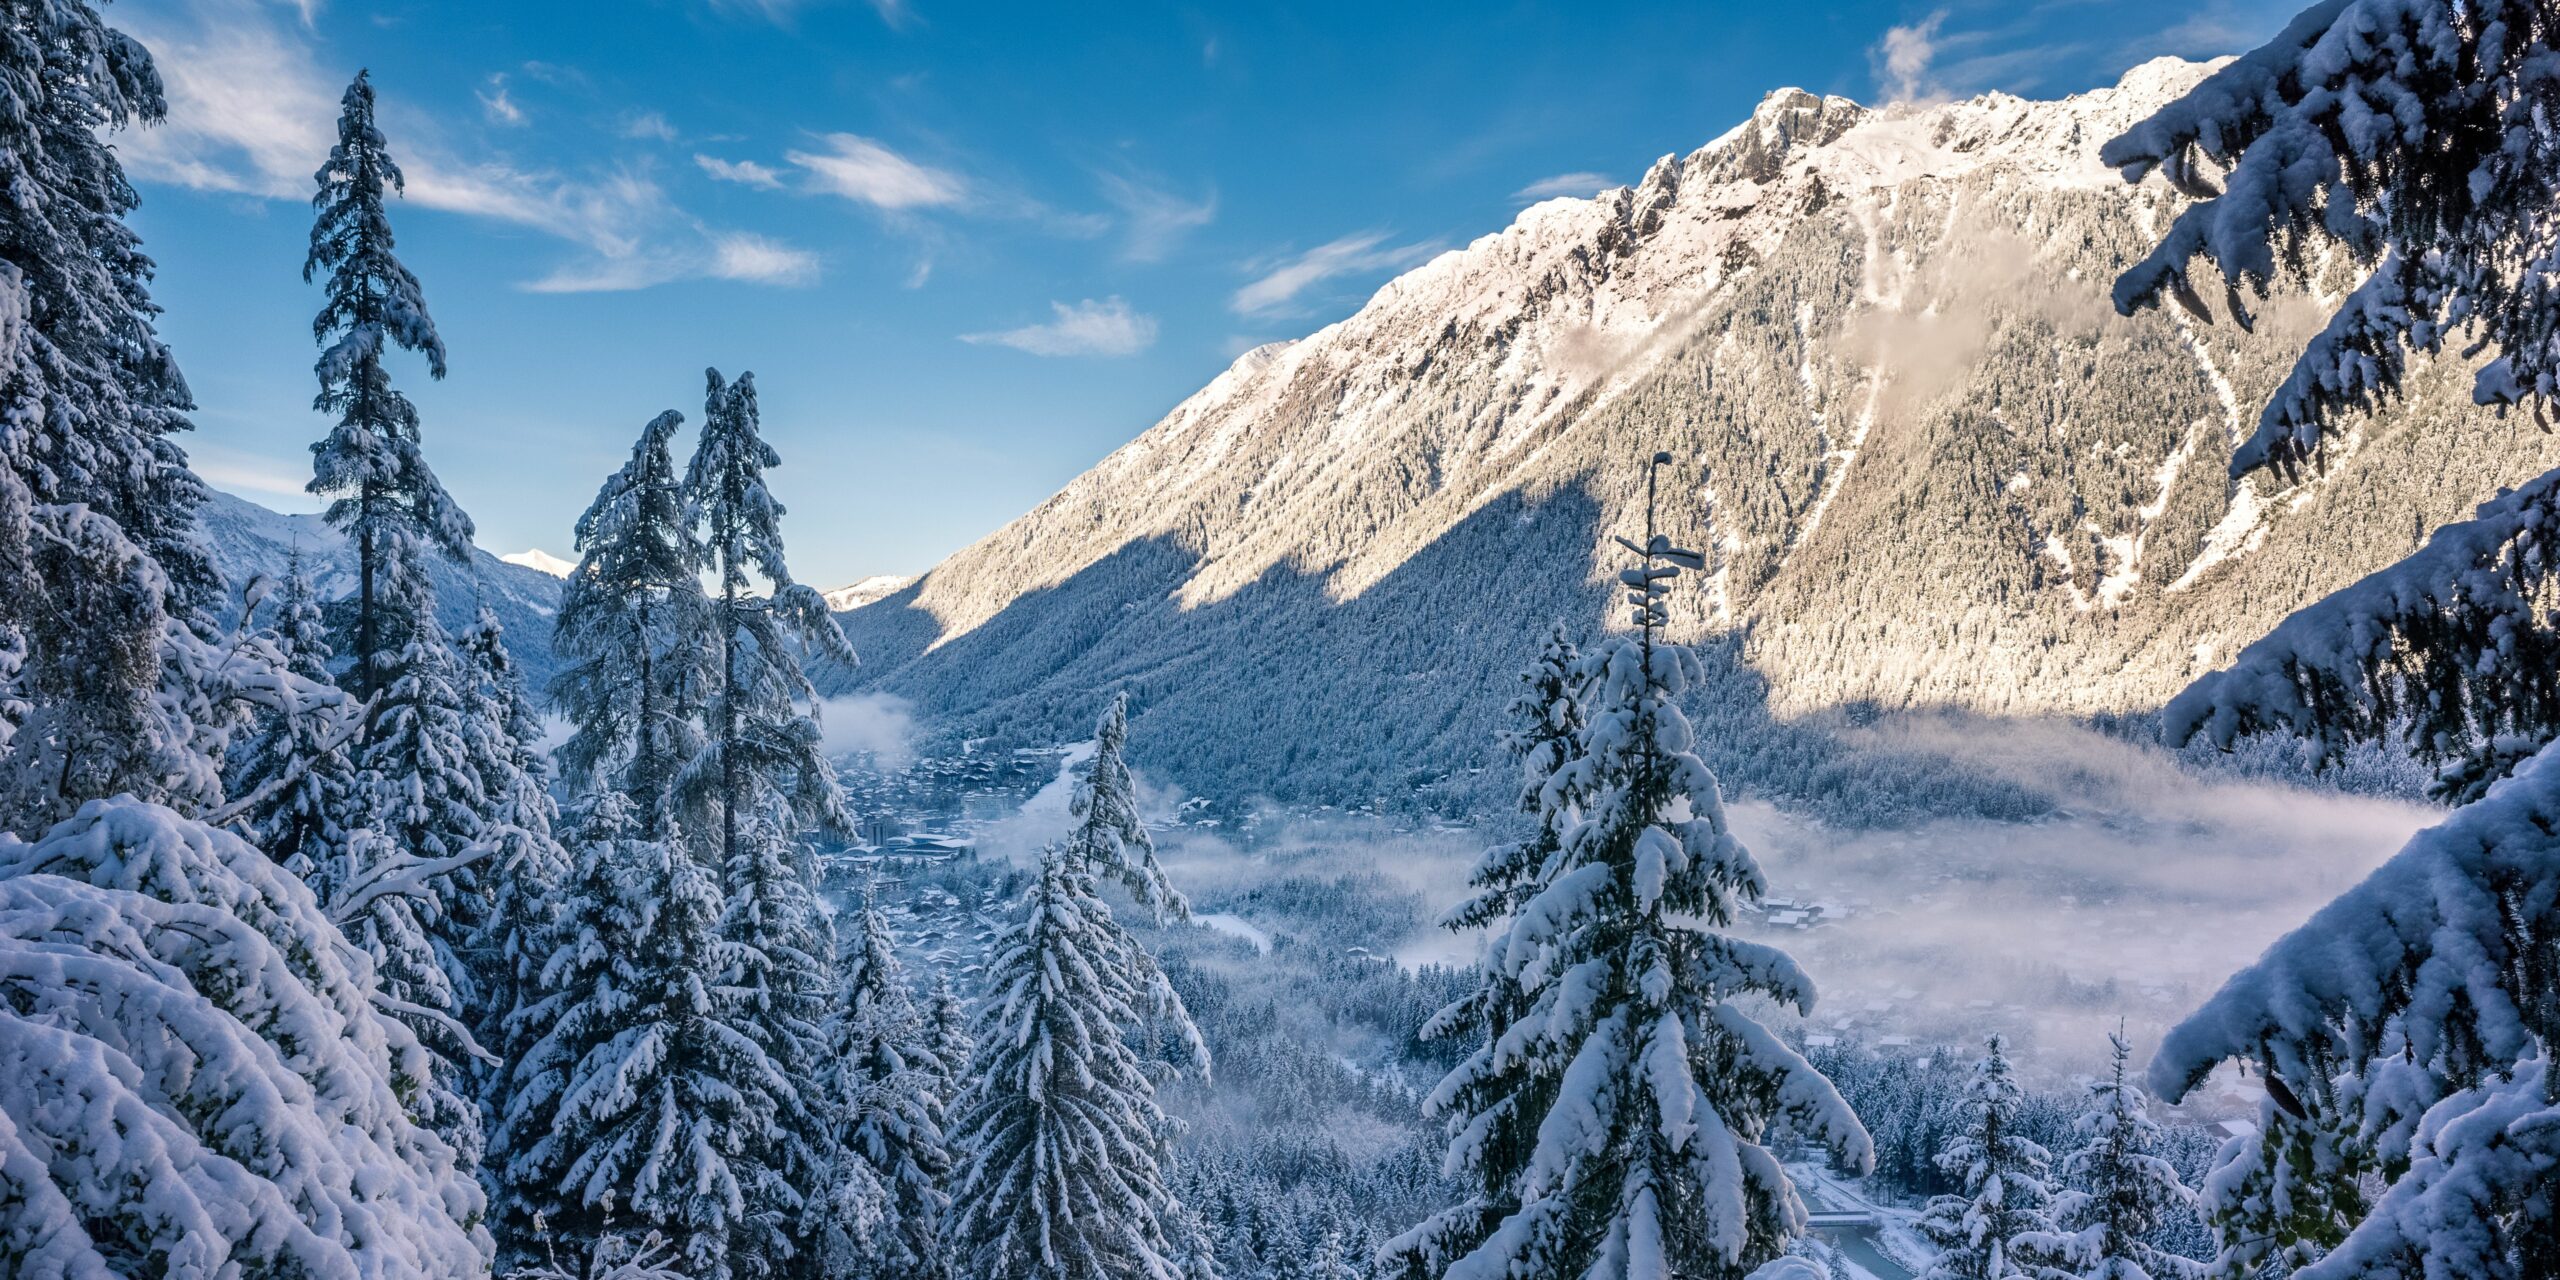 Les montagnes de Chamonix dans les Alpes vues depuis la forêt de sapins